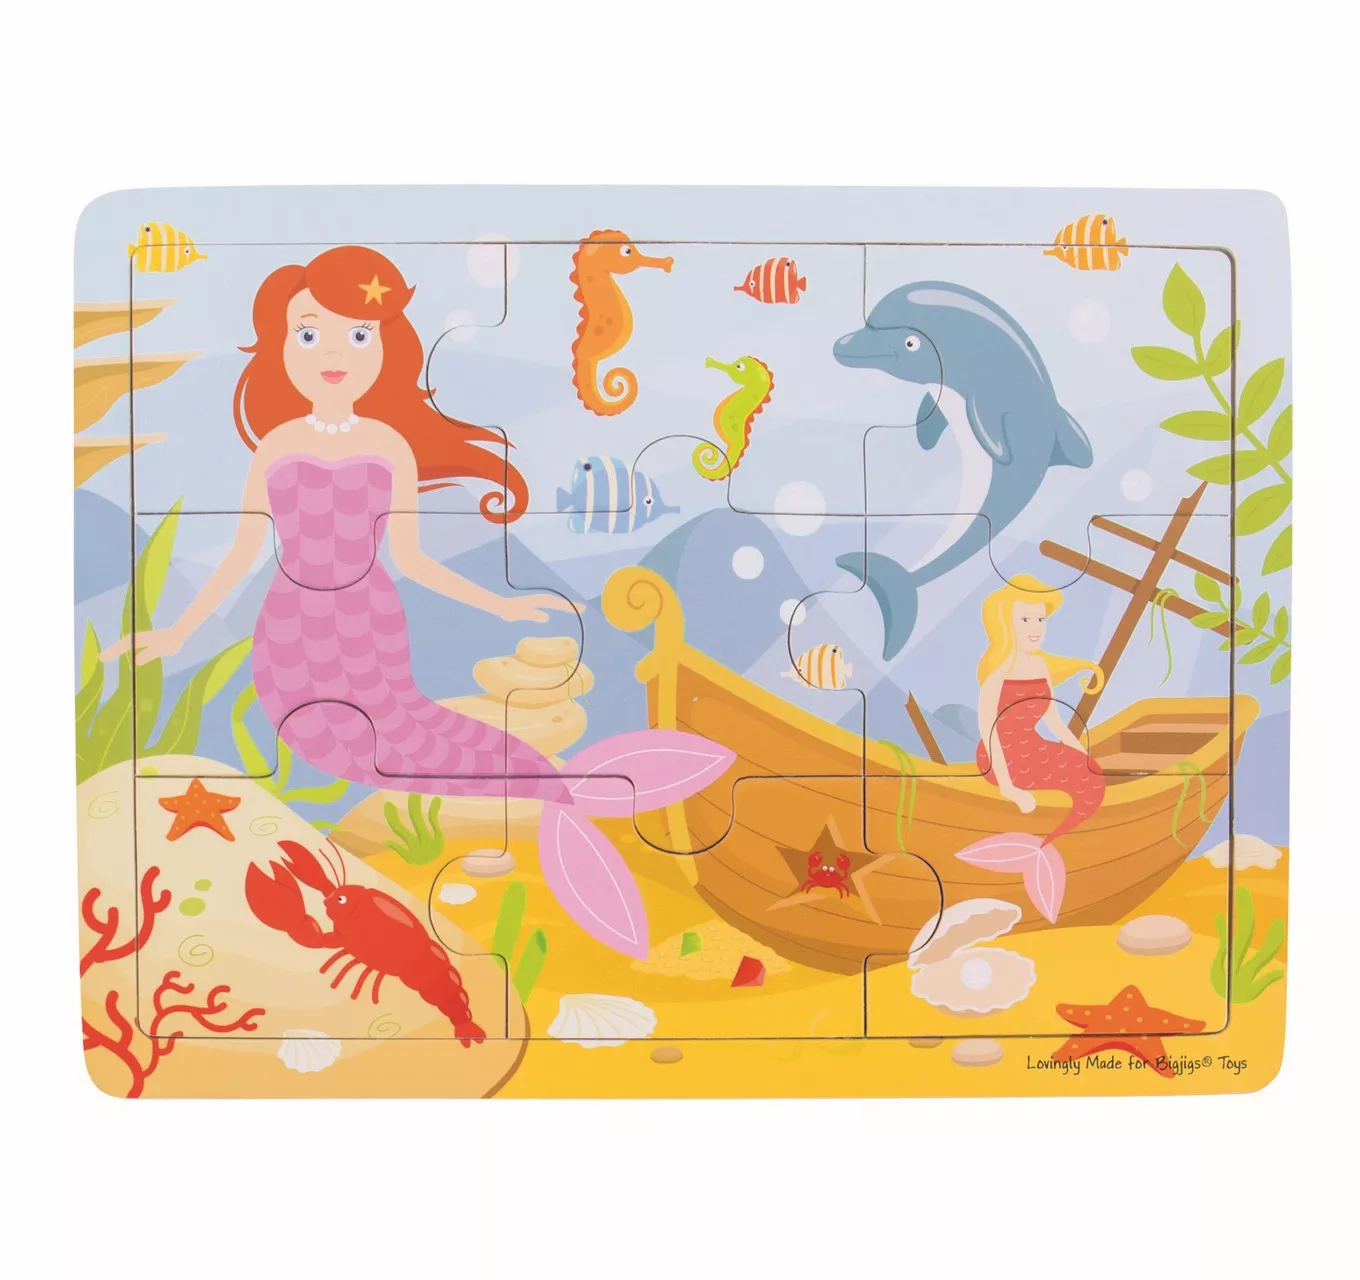 Tray Puzzle - Mermaid